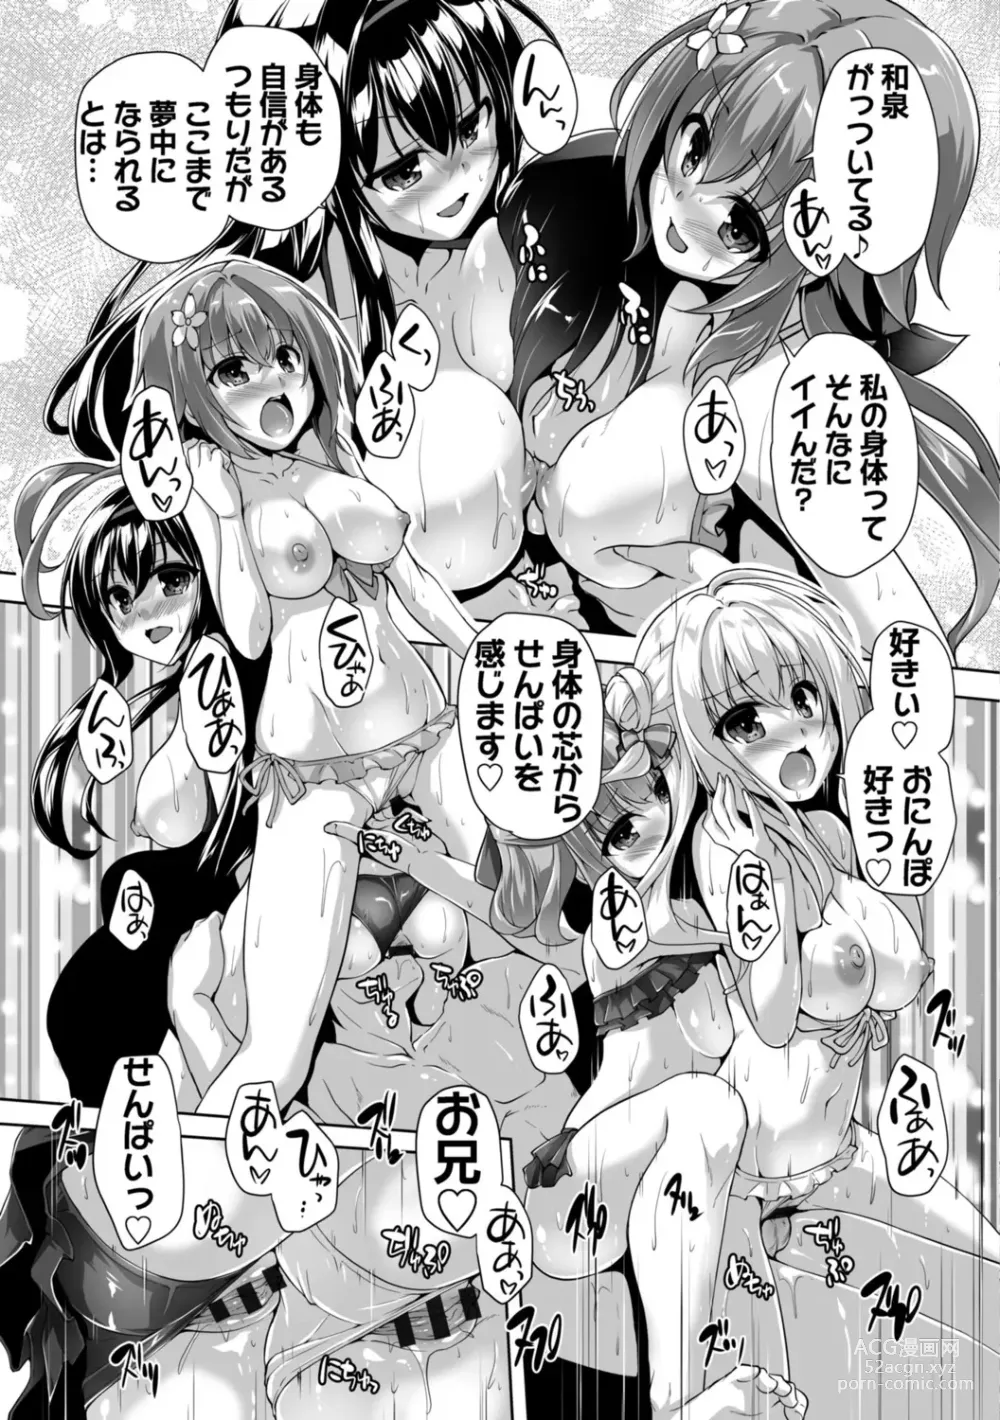 Page 205 of manga Hamidashi Creative Adult Edition